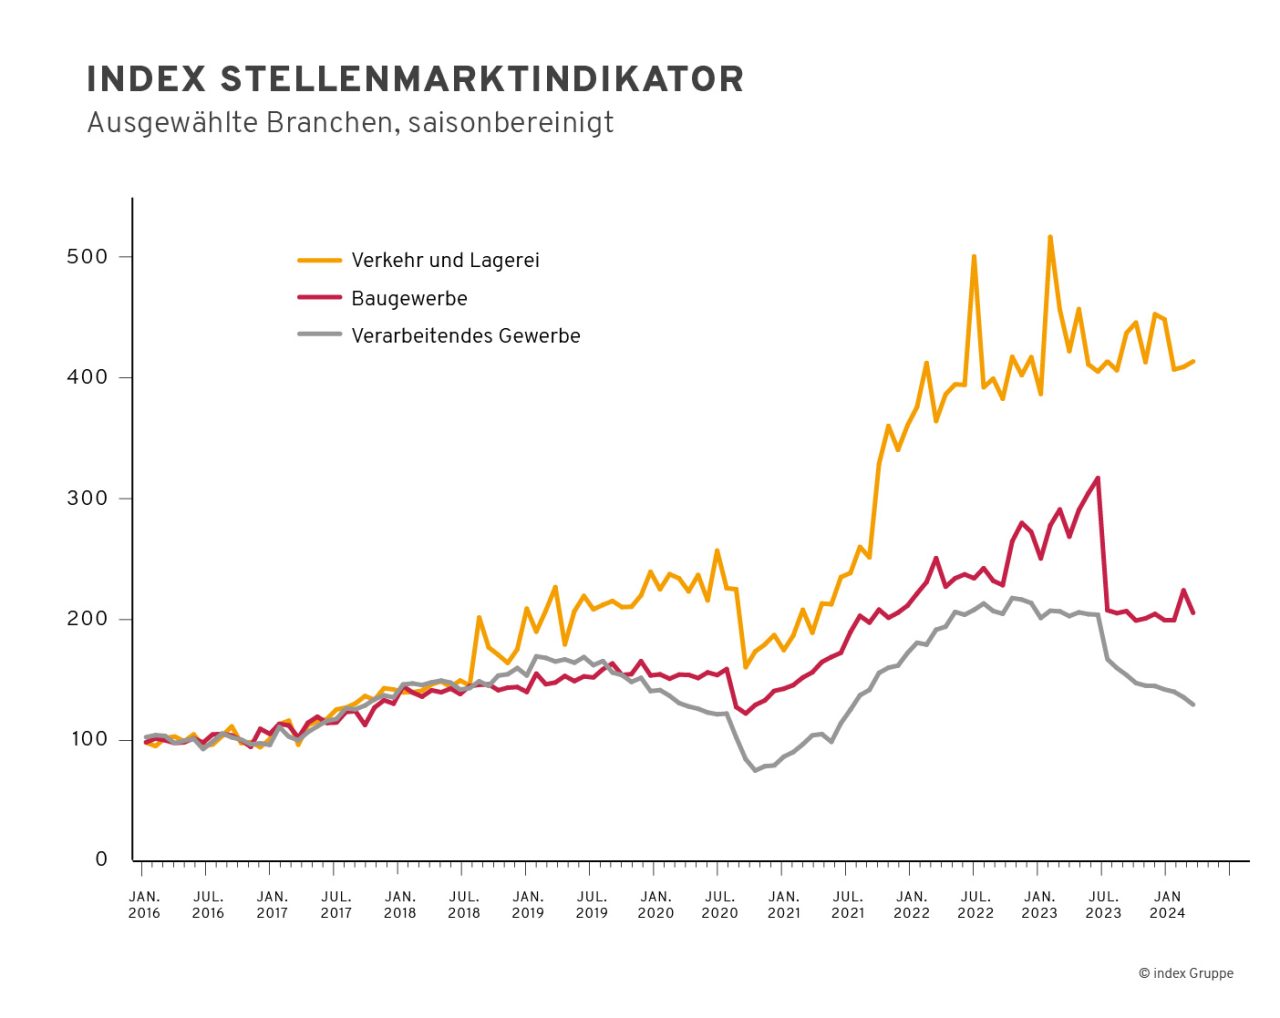 index-Stellenmarktindikator - ausgewählte Branchen saisonbereinigt, Quelle Index Gruppe